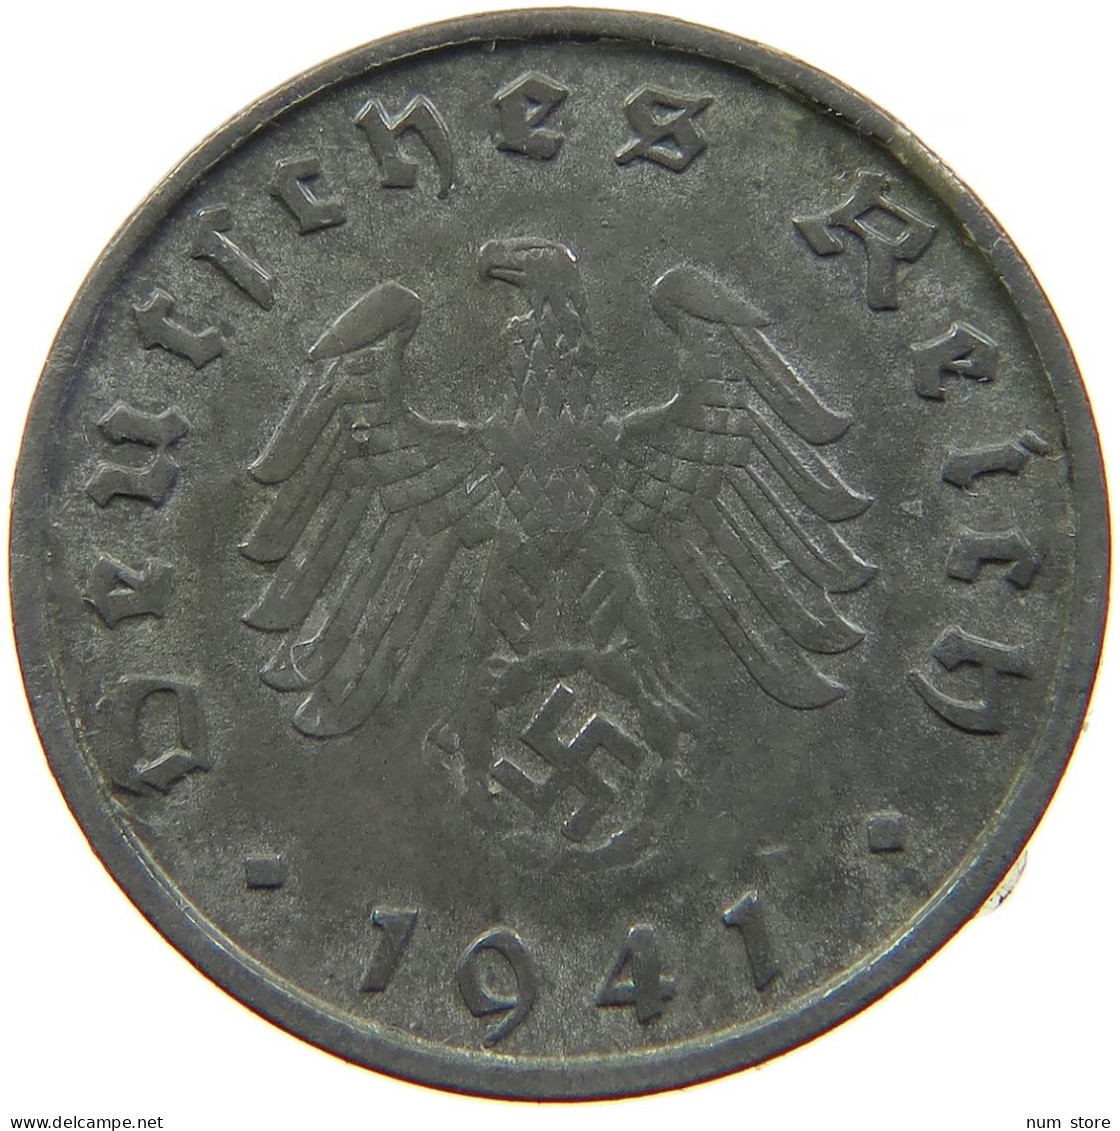 GERMANY 10 REICHSPFENNIG 1941 B #s095 0015 - 10 Reichspfennig